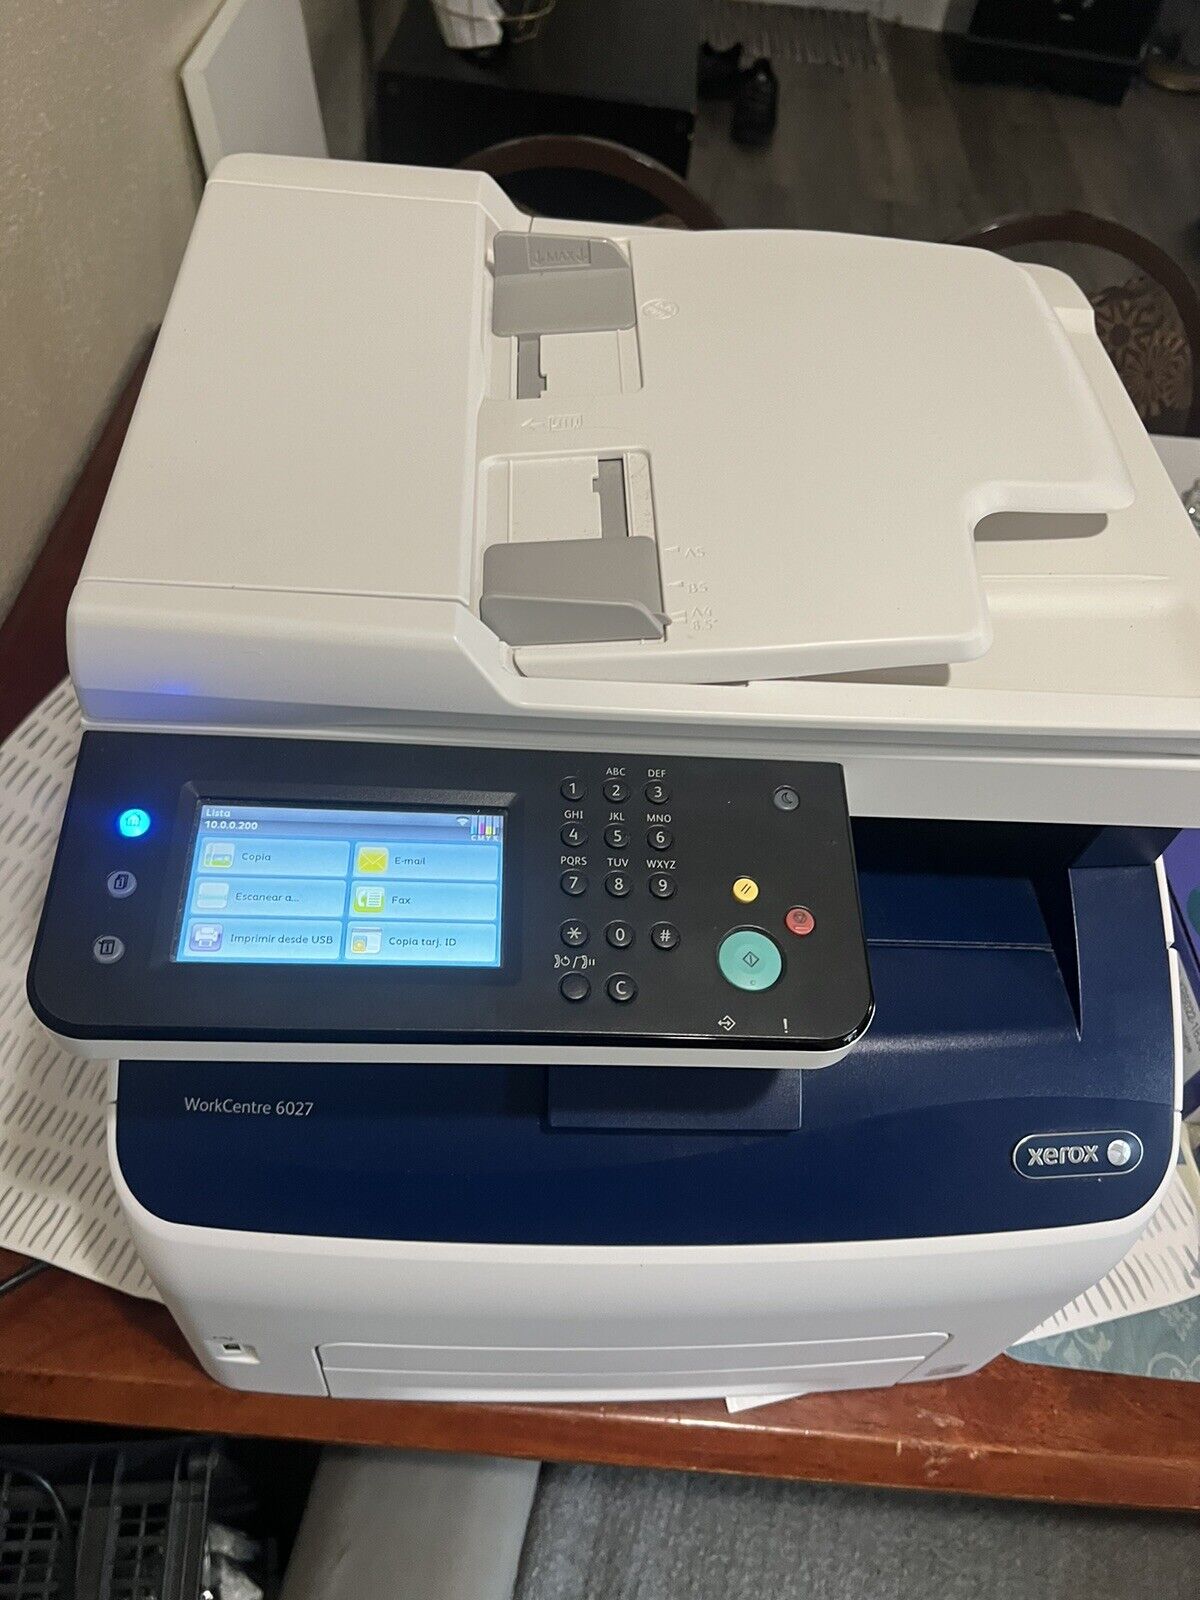 Xerox WorkCentre 6027/NI Wireless Multi-function Color Laser Printer